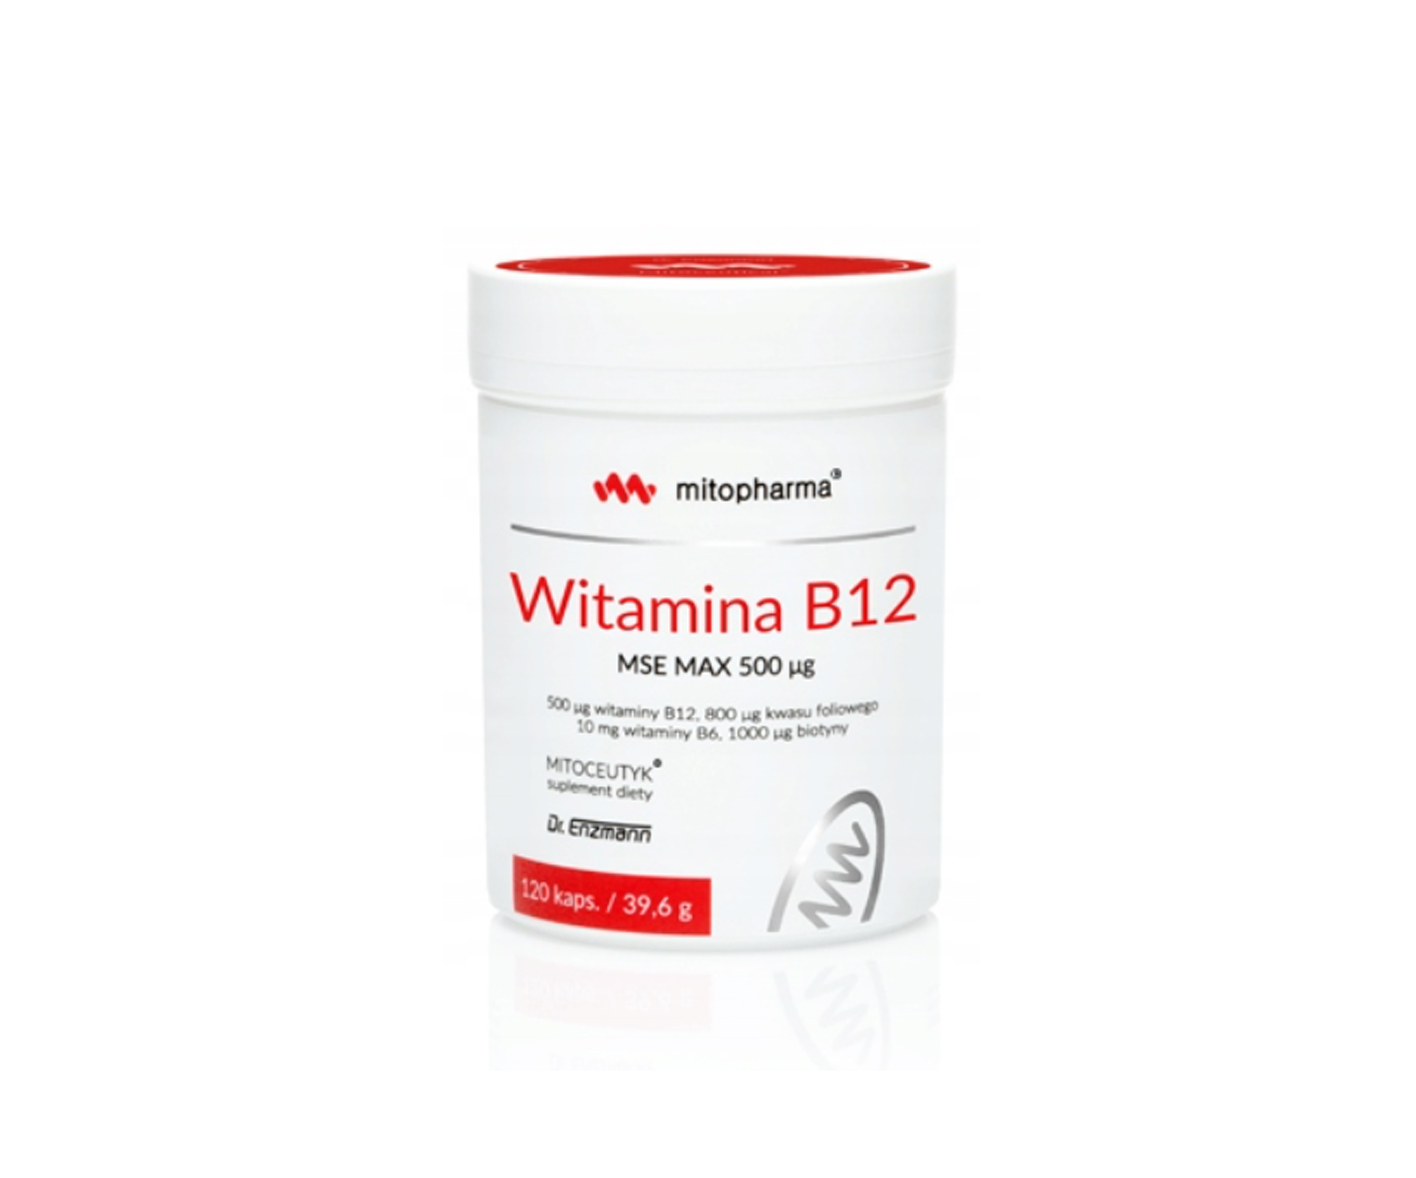 Dr Enzmann, Mitopharma, Witamina B12 w kapsułkach